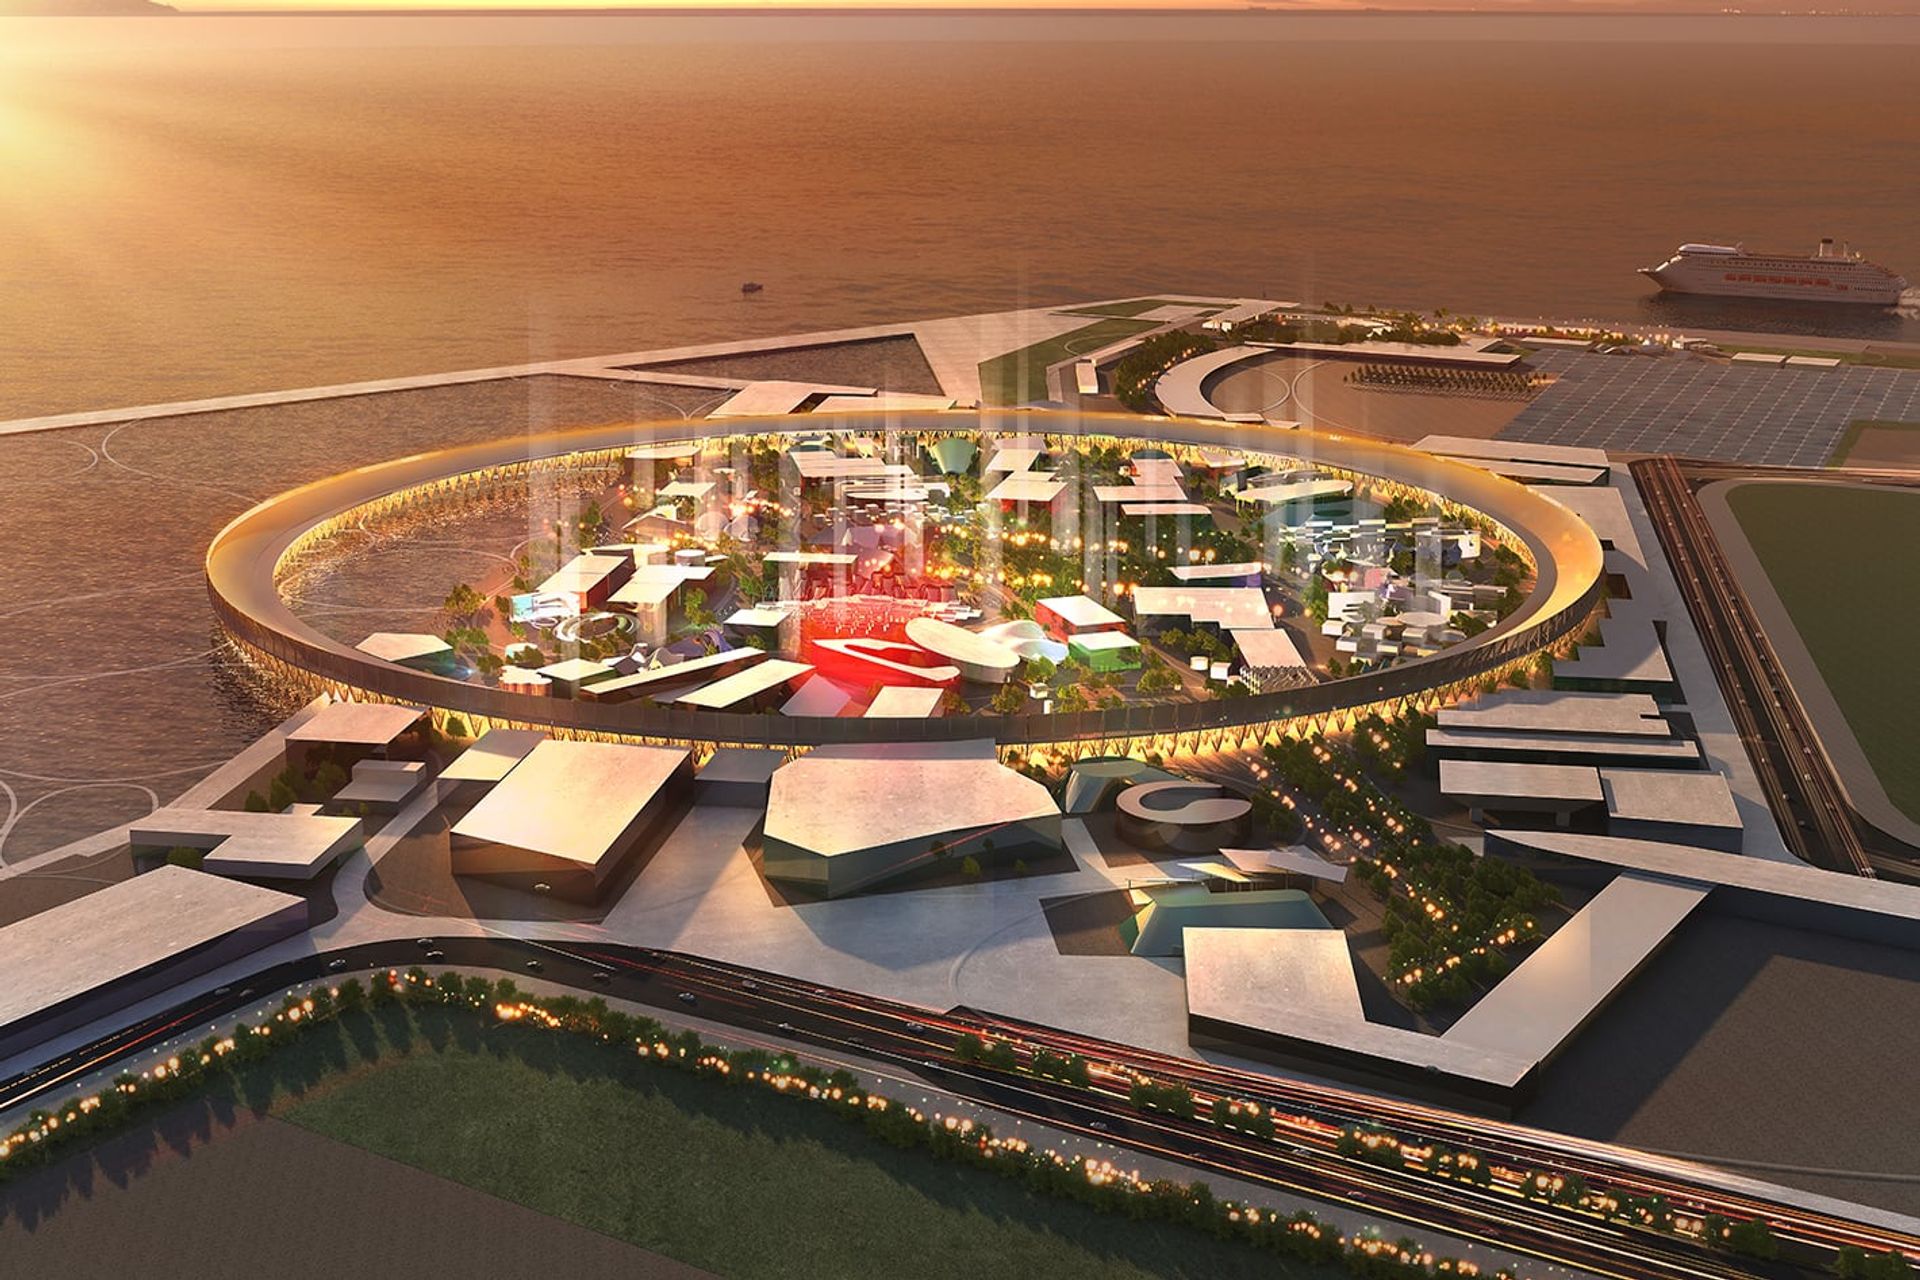 Il rendering dell'area principale destinata ad accogliere l'Esposizione Universale di Osaka (Giappone) del 2025